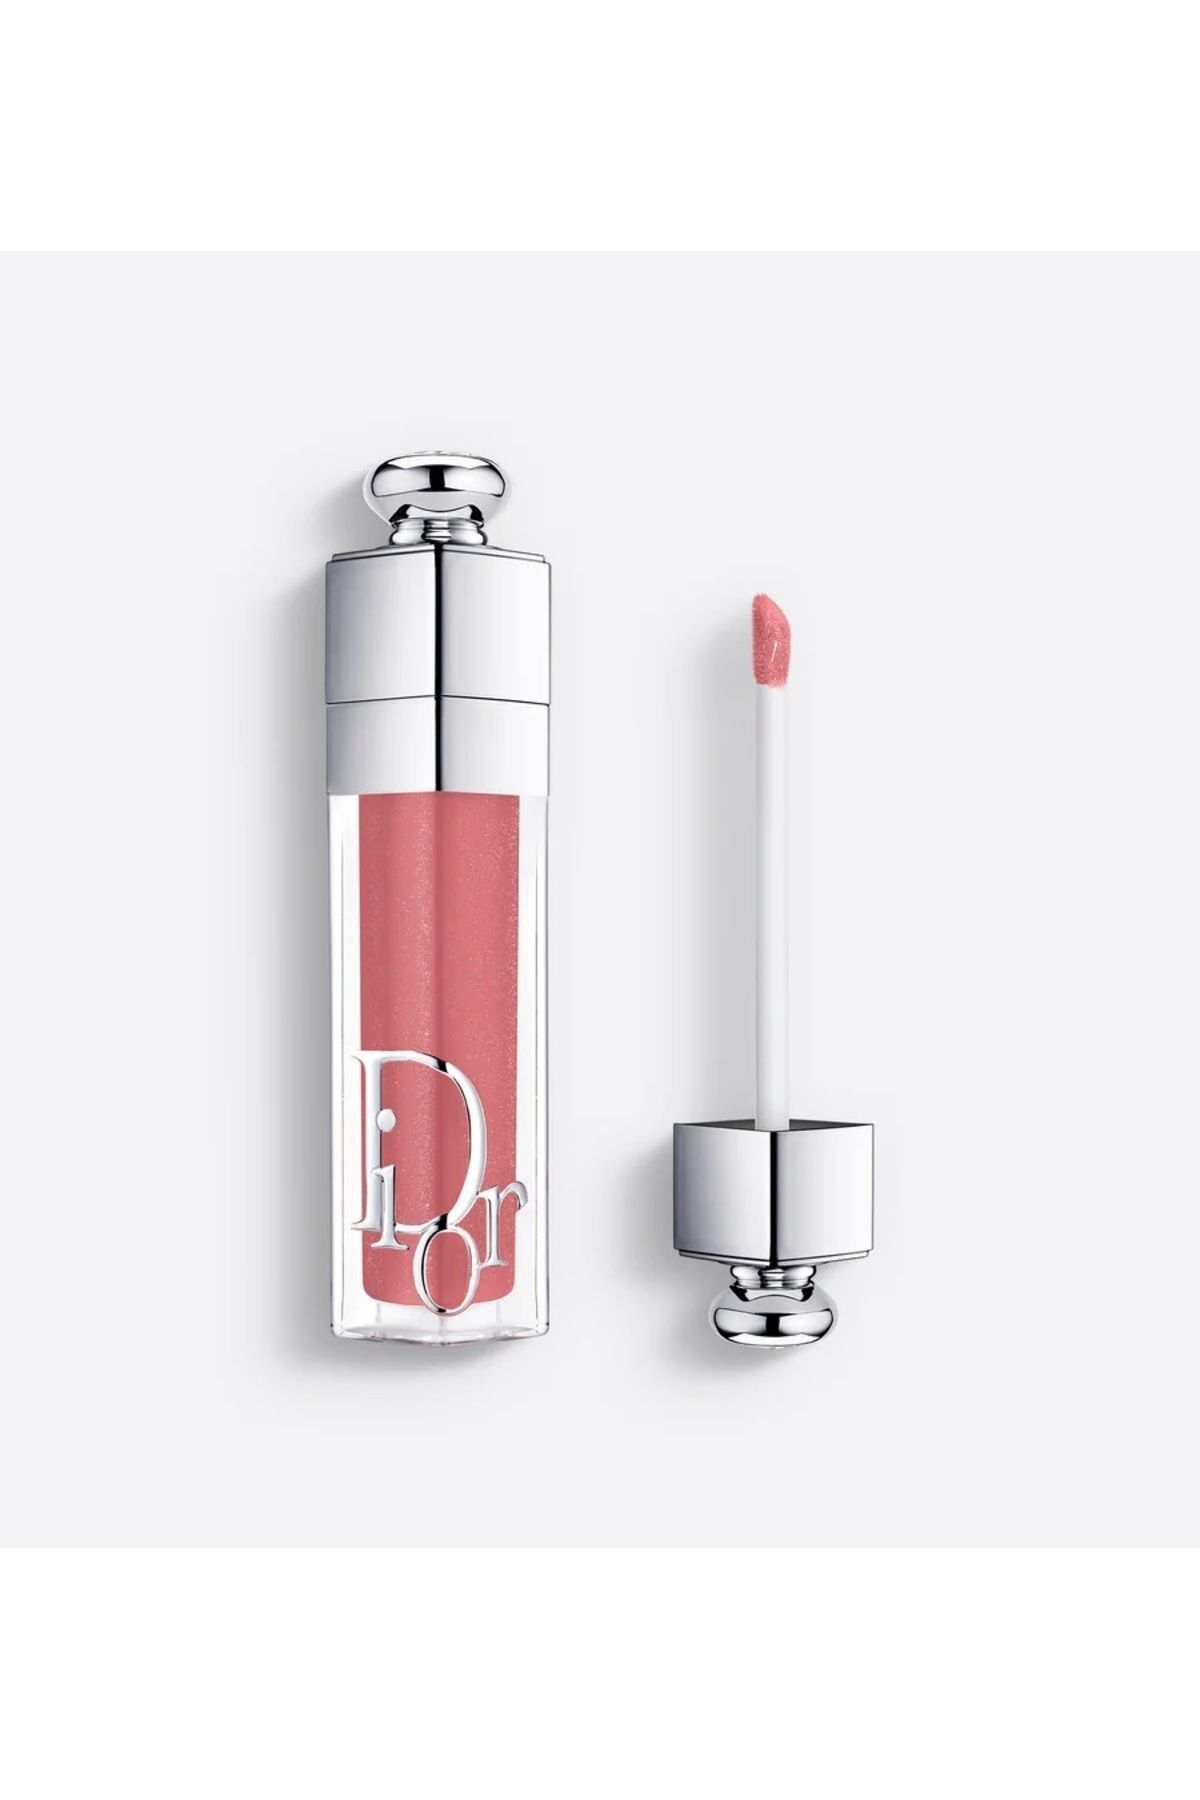 Dior Addict Lip Maximizer - 24 Saat Etkili Nemlendirici Yoğun Işıltılı Dolgunlaştırıcı Ultra Parlak Ruj